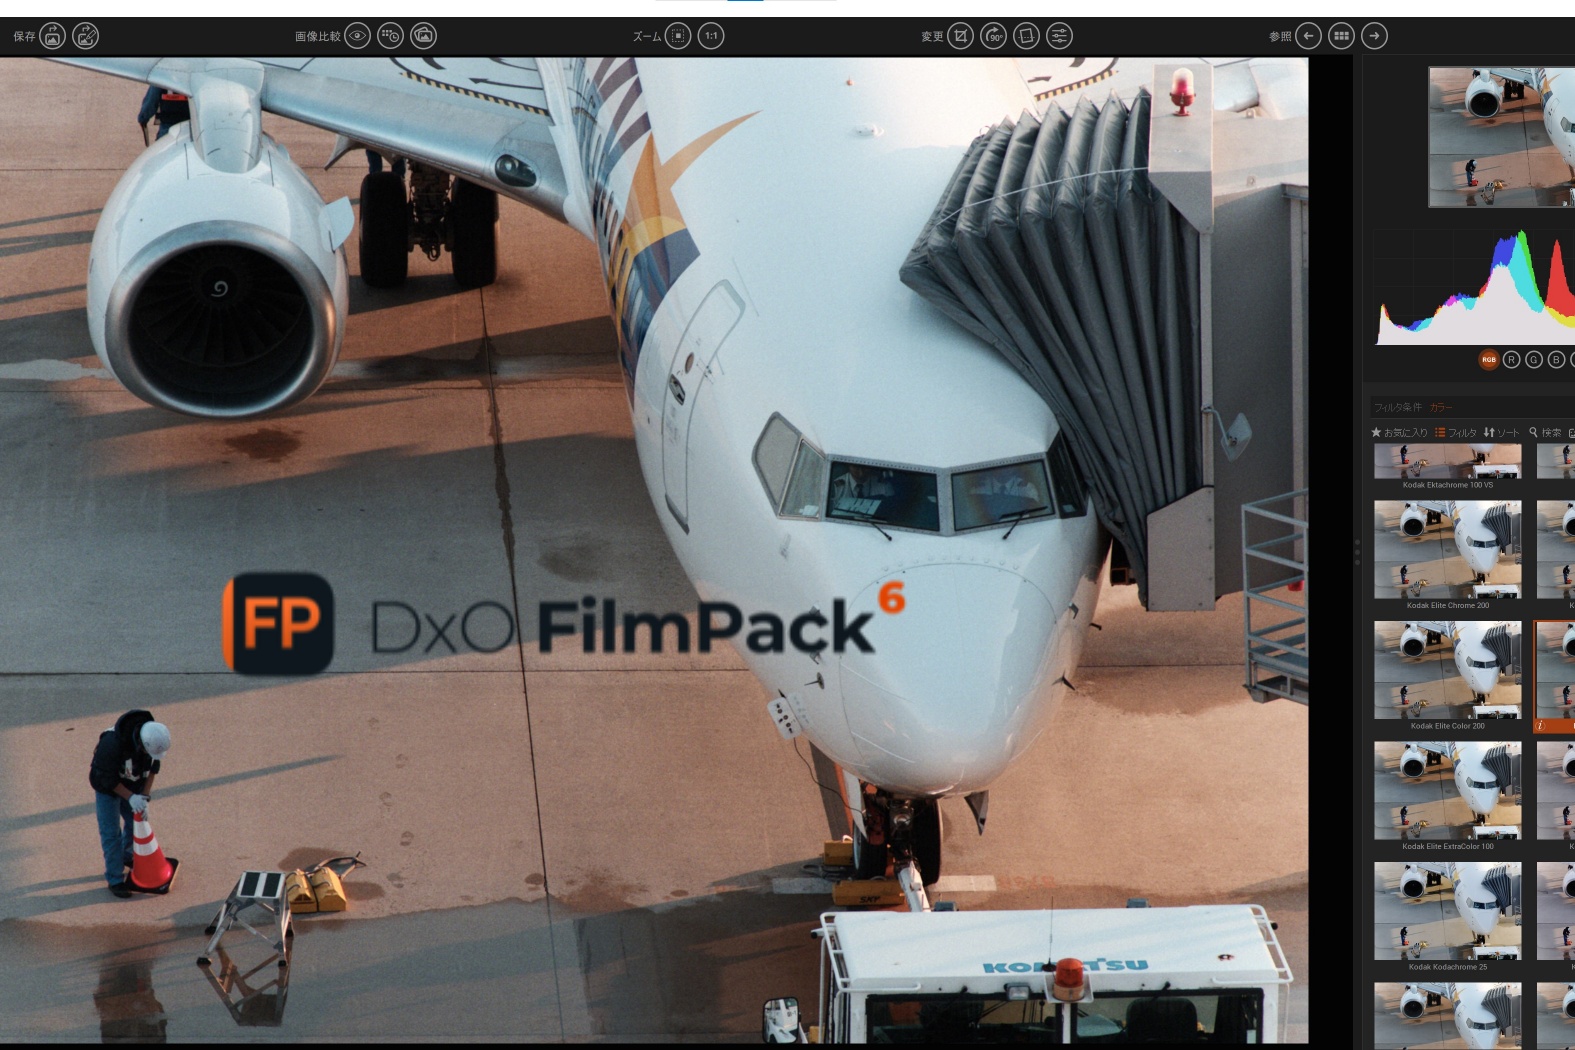 印象的なフィルム写真の雰囲気をつくれる DxO FilmPack 6 ついに富士のフィルムシミュレーションや映画フィルムにも対応